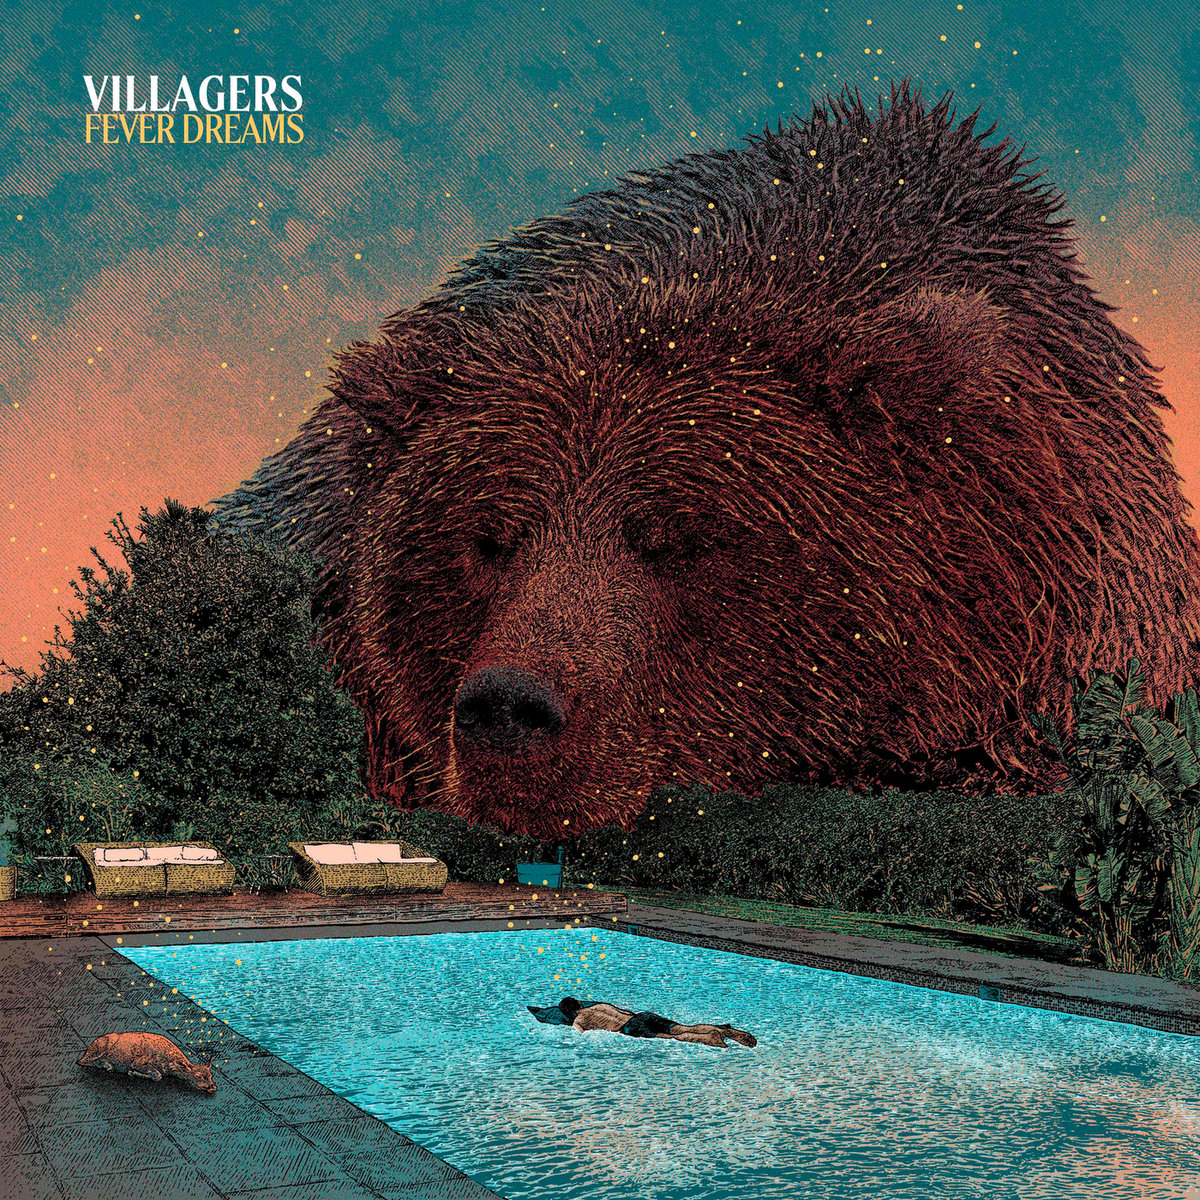 ALBUM REVIEW: Villagers - Fever Dreams 